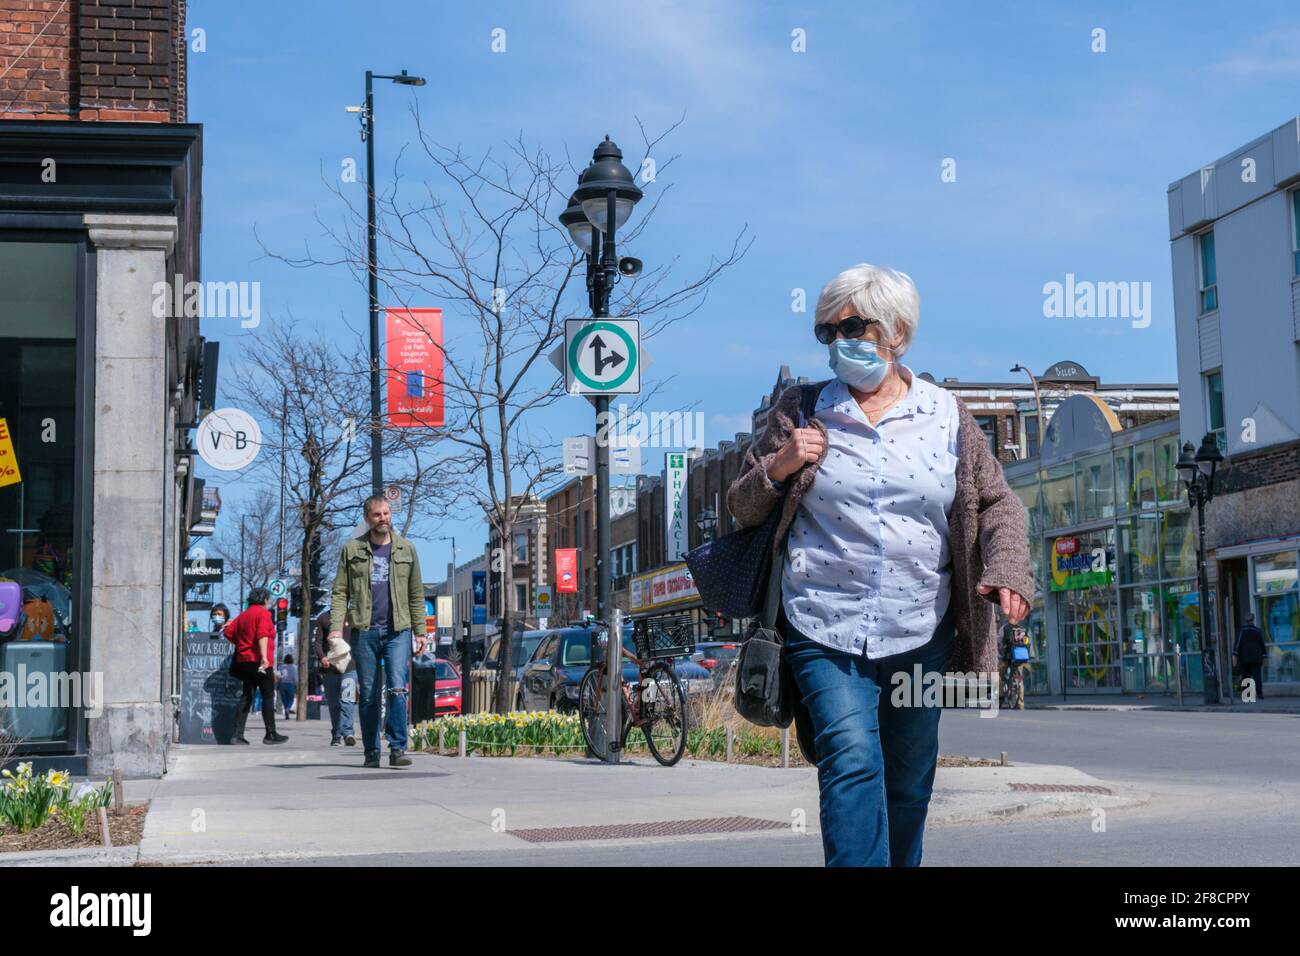 Montreal, CA - 11. April 2021: Fußgänger mit Gesichtsmaske zum Schutz vor COVID-19, der die Straße entlang geht Stockfoto